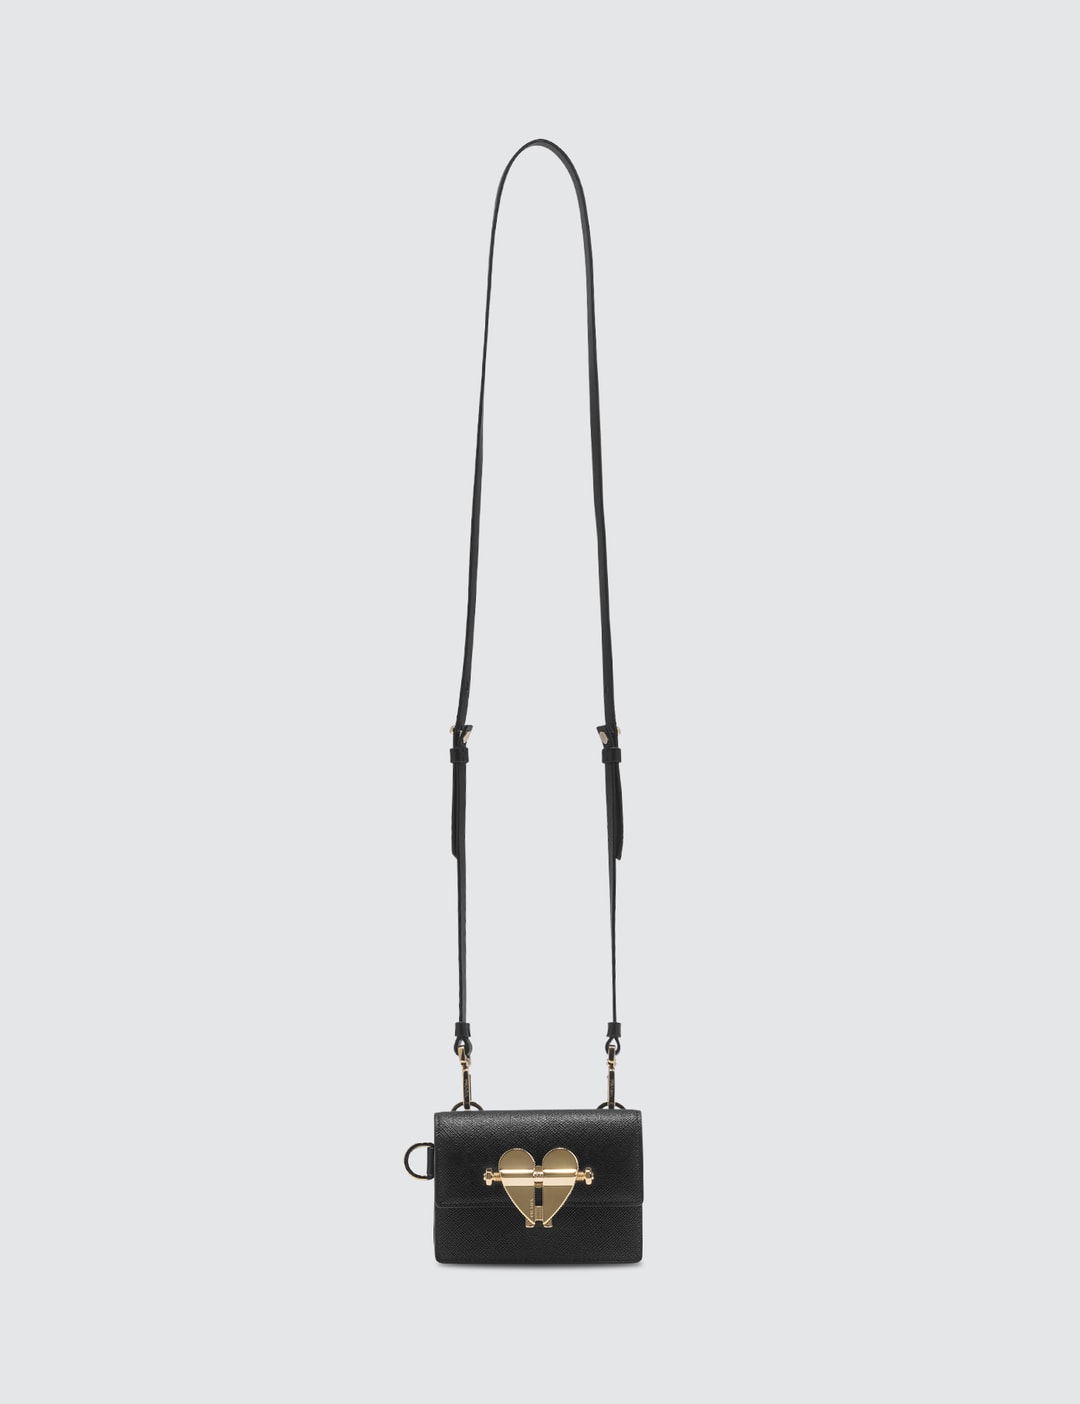 Prada - Saffiano Mini Bag | HBX - Globally Curated Fashion and ...